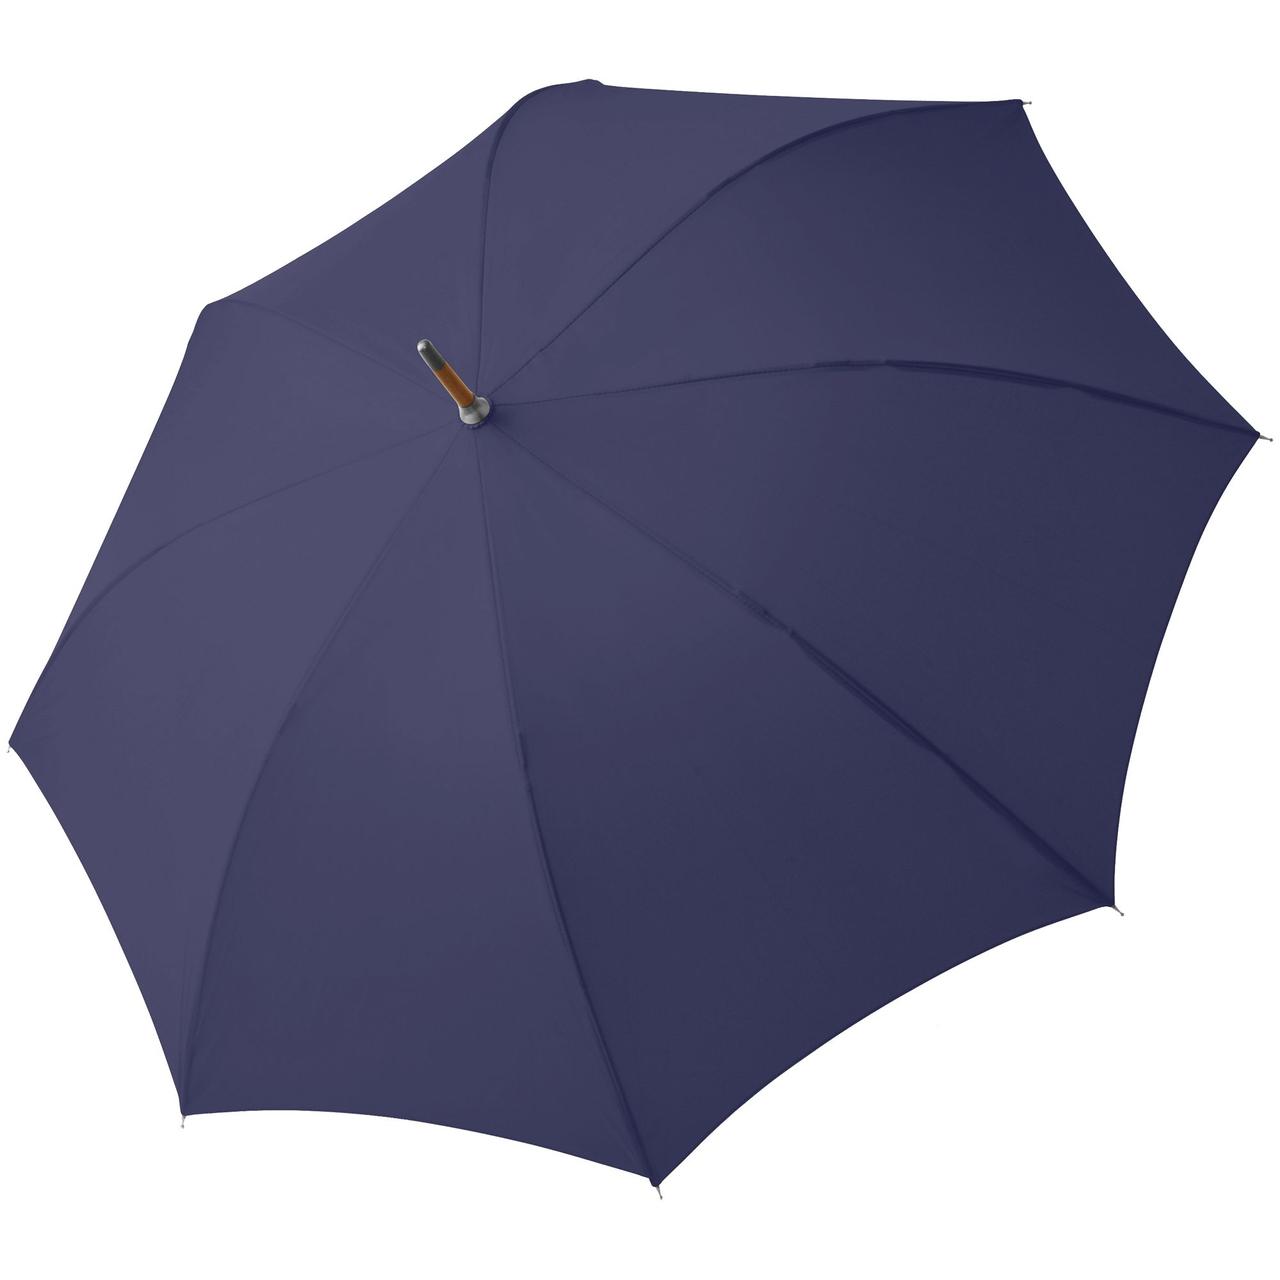 Зонт-трость Oslo AC, темно-синий (артикул 11847.40)